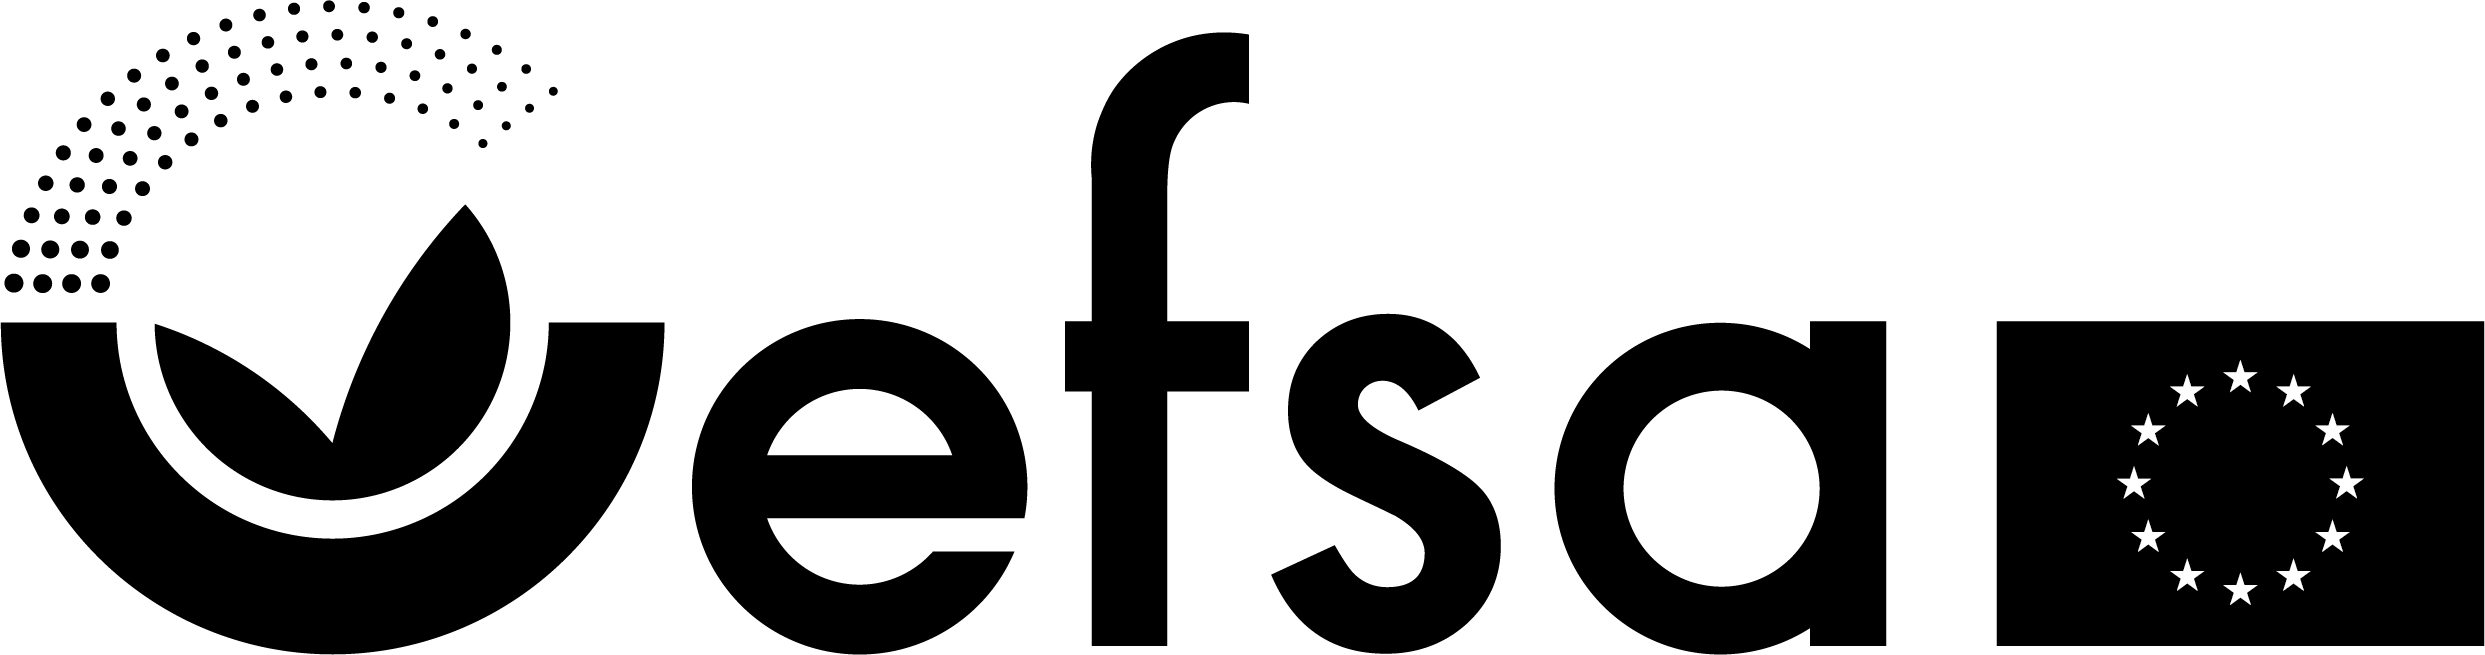 EFSA — logo i sort og hvid